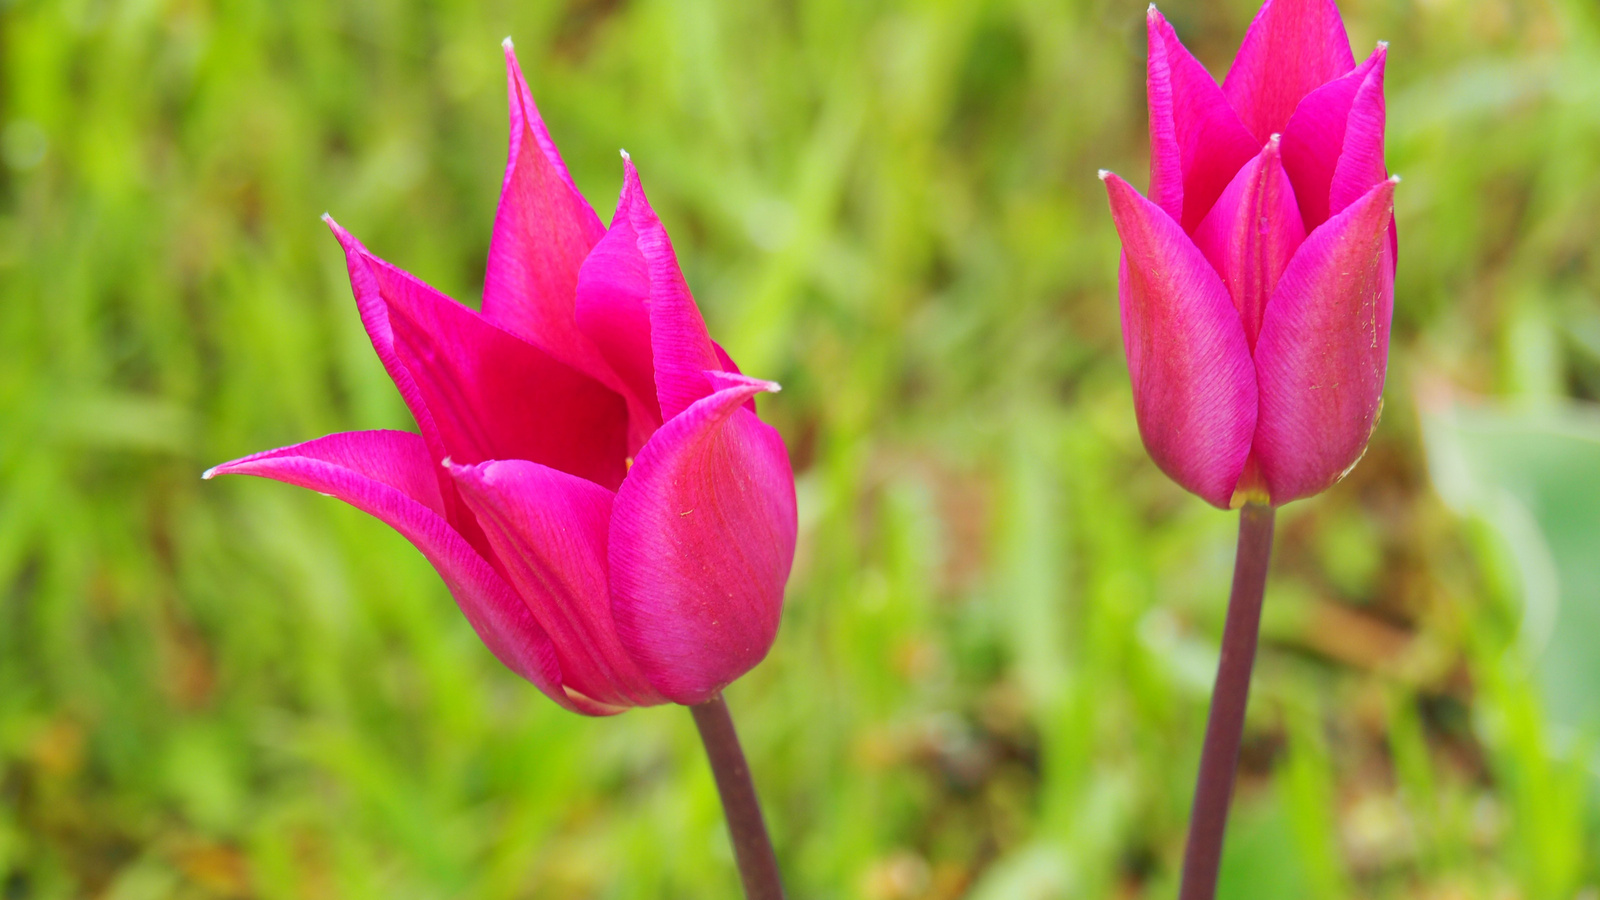 A pilisborosjenői tulipános kert, SzG3